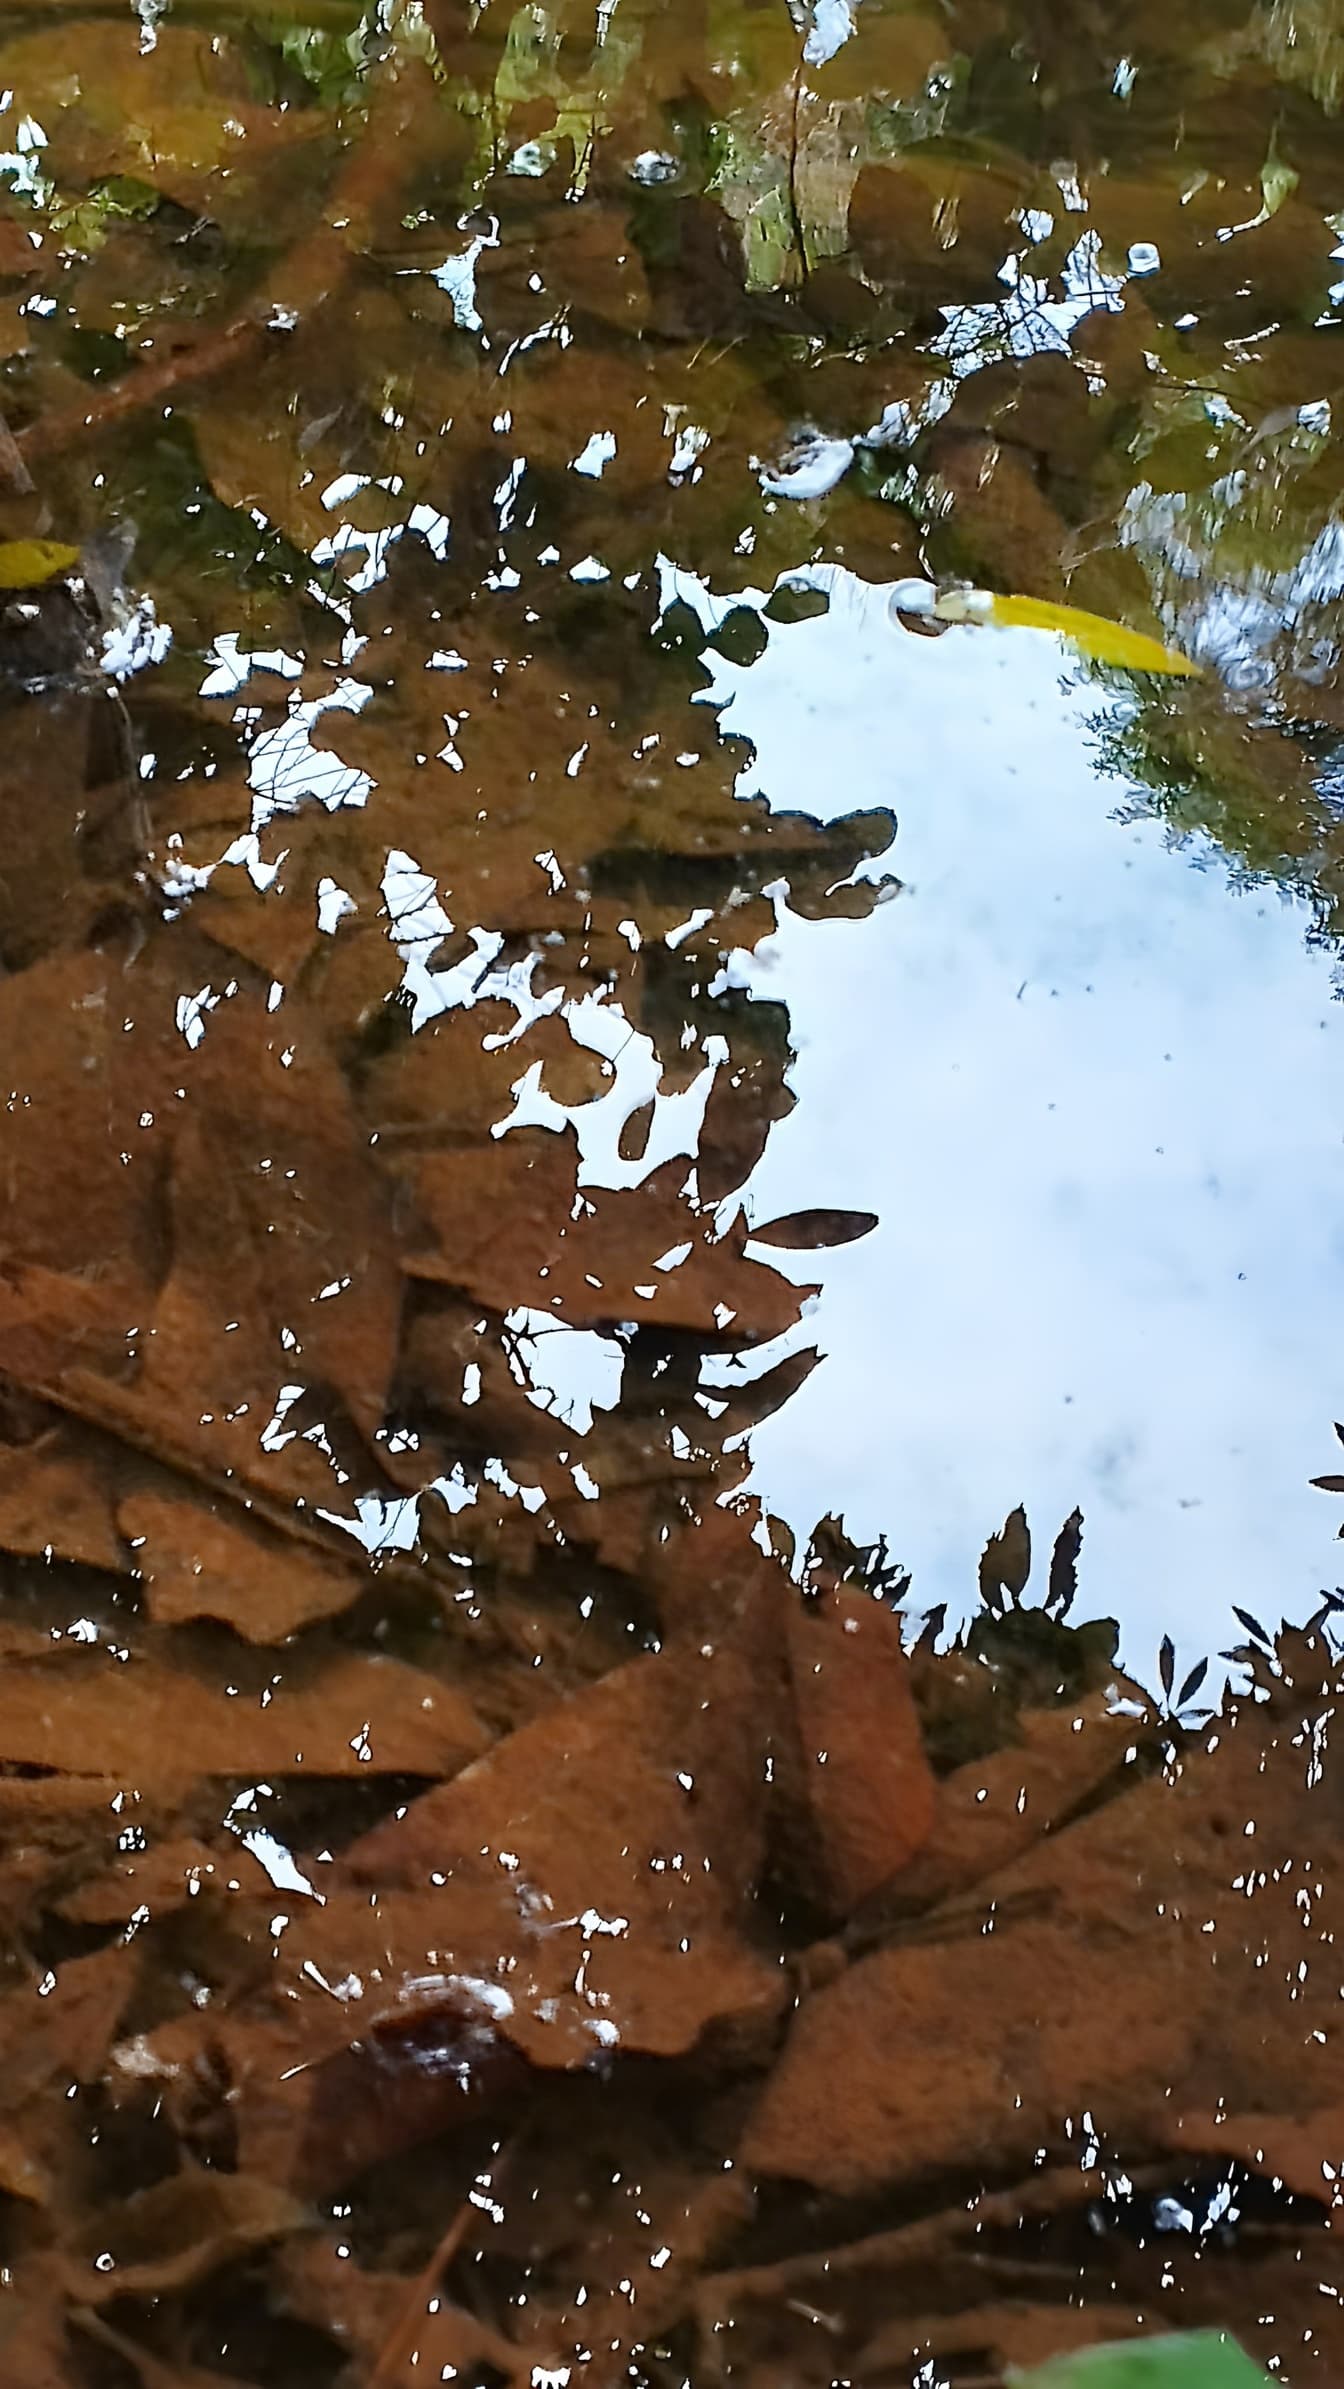 Genangan air dengan daun coklat jatuh di bawah air